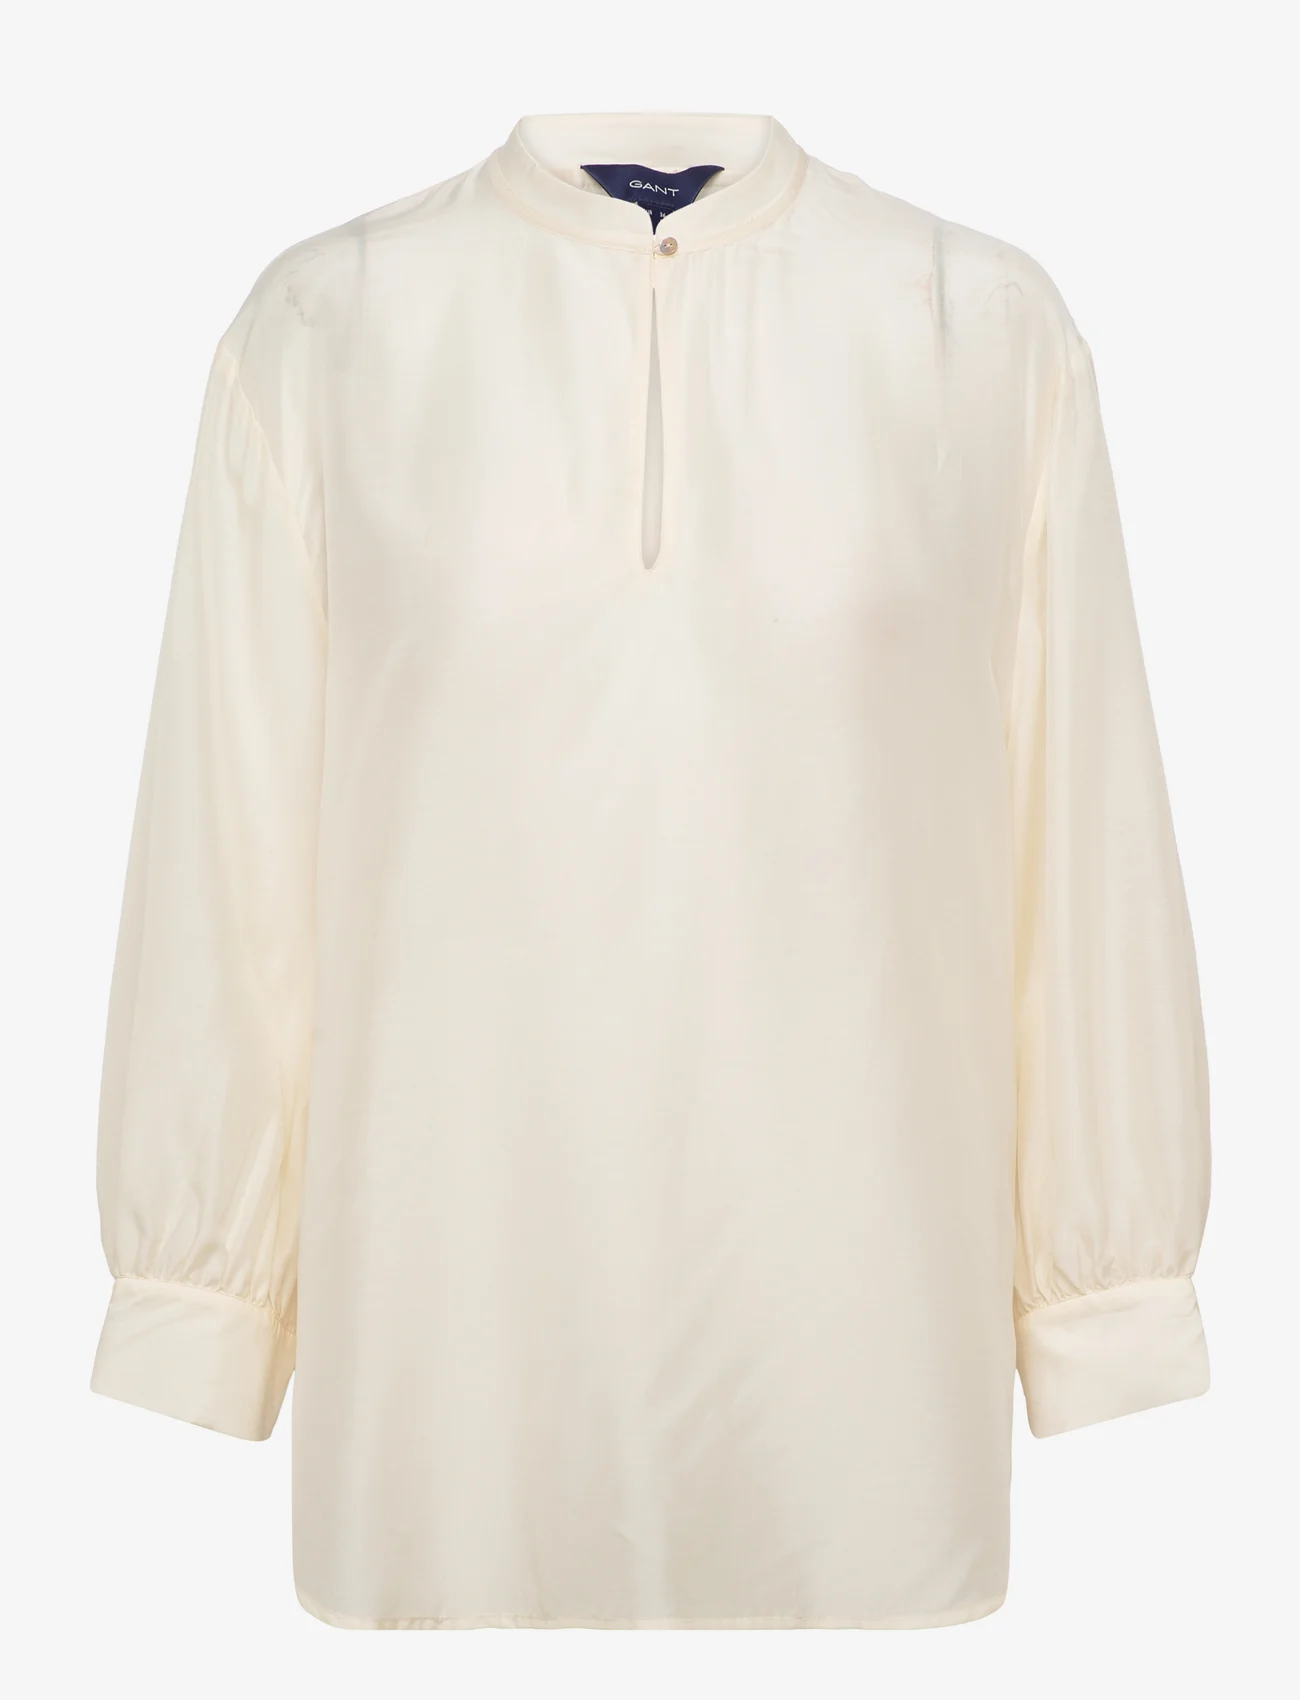 GANT - D2. LYOCELL SILK POP OVER BLOUSE - long-sleeved blouses - linen - 0